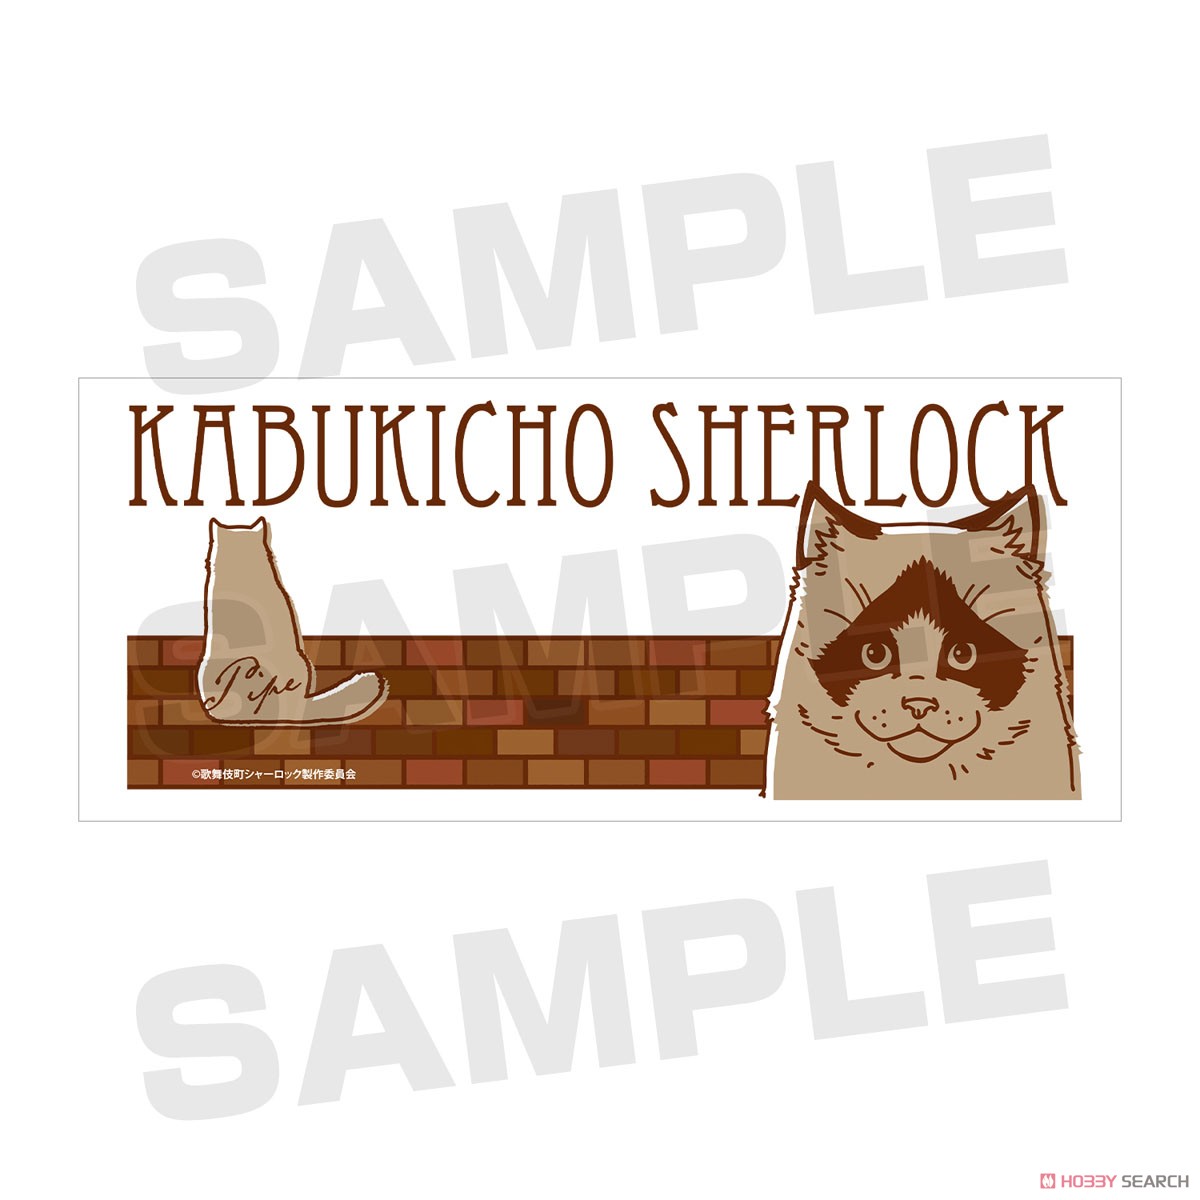 Kabukicho Sherlock Mug Cup (Anime Toy) Item picture3